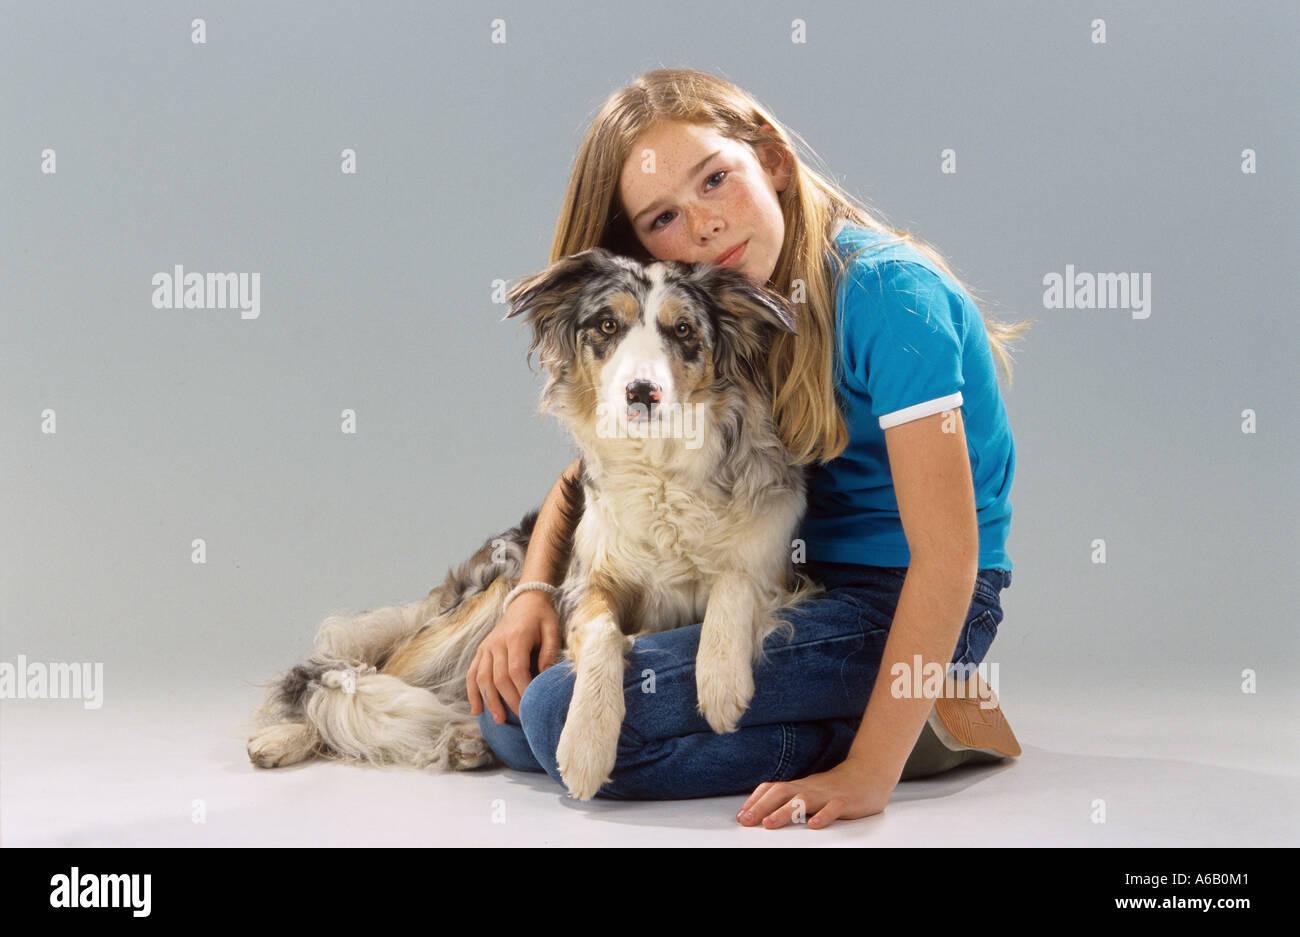 girl with Australian Shepherd dog Stock Photo